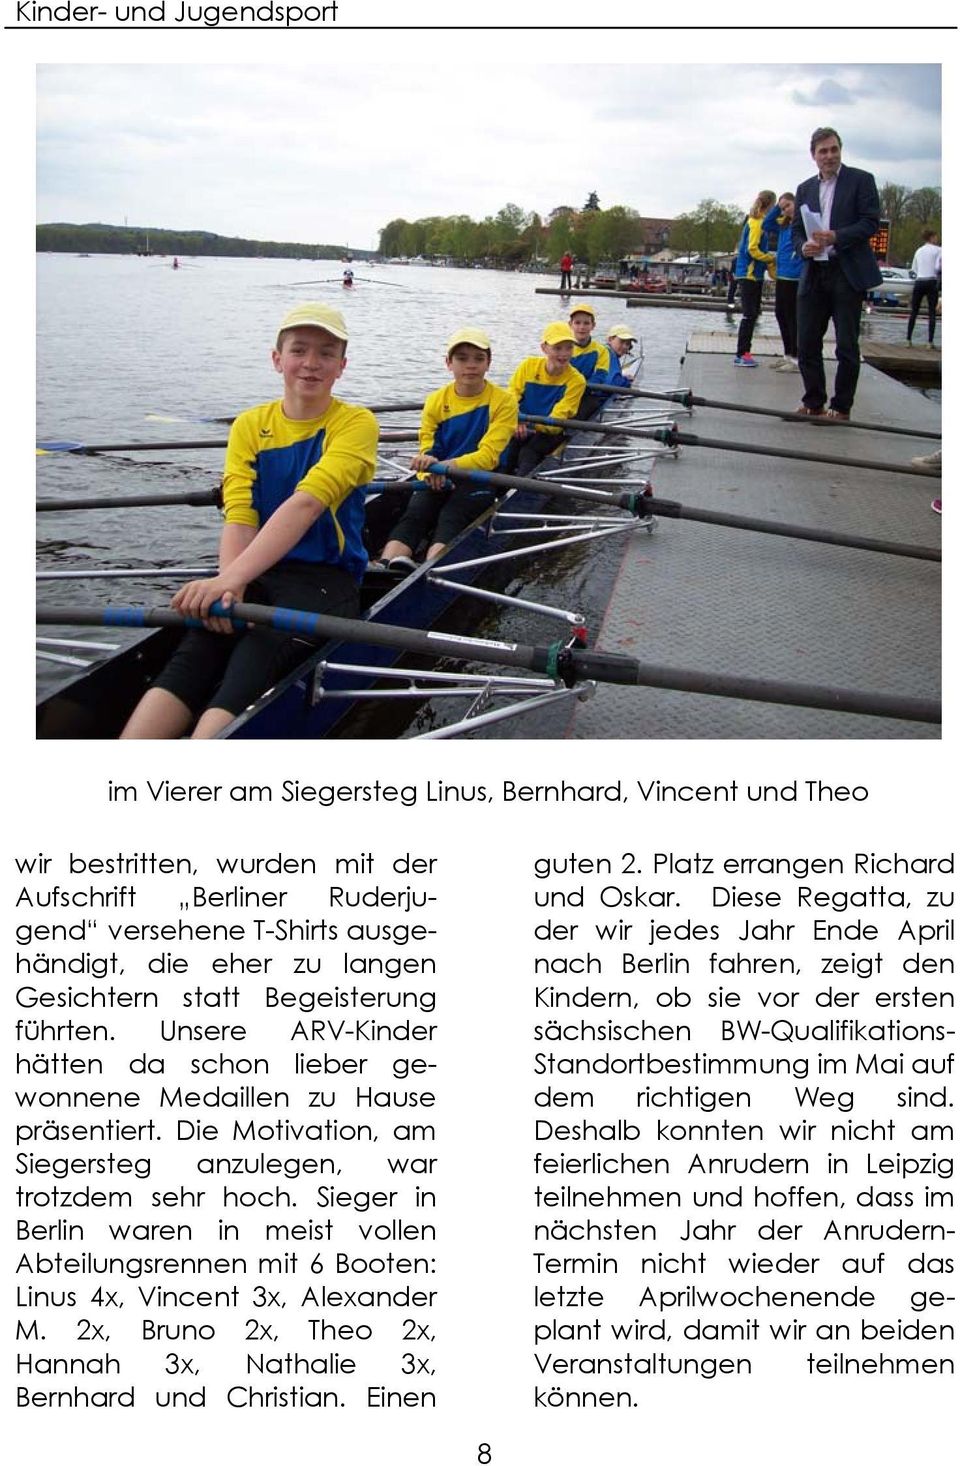 Sieger in Berlin waren in meist vollen Abteilungsrennen mit 6 Booten: Linus 4x, Vincent 3x, Alexander M. 2x, Bruno 2x, Theo 2x, Hannah 3x, Nathalie 3x, Bernhard und Christian. Einen guten 2.